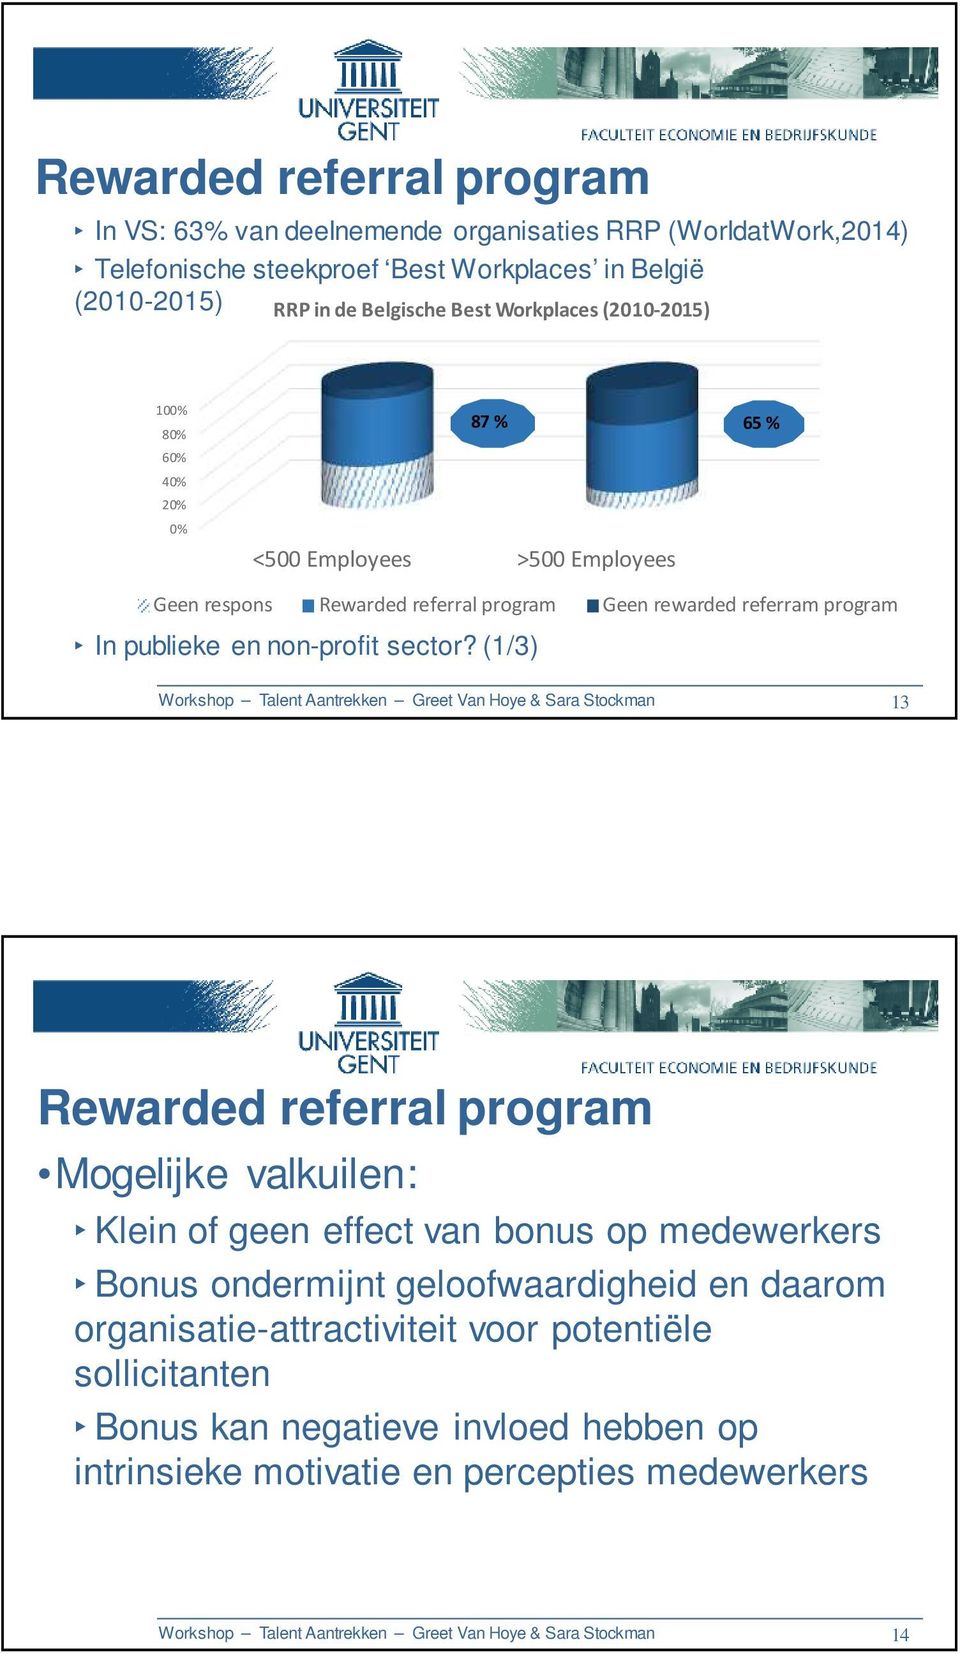 (1/3) Workshop Talent Aantrekken Greet Van Hoye & Sara Stockman 13 Rewarded referral program Mogelijke valkuilen: Klein of geen effect van bonus op medewerkers Bonus ondermijnt